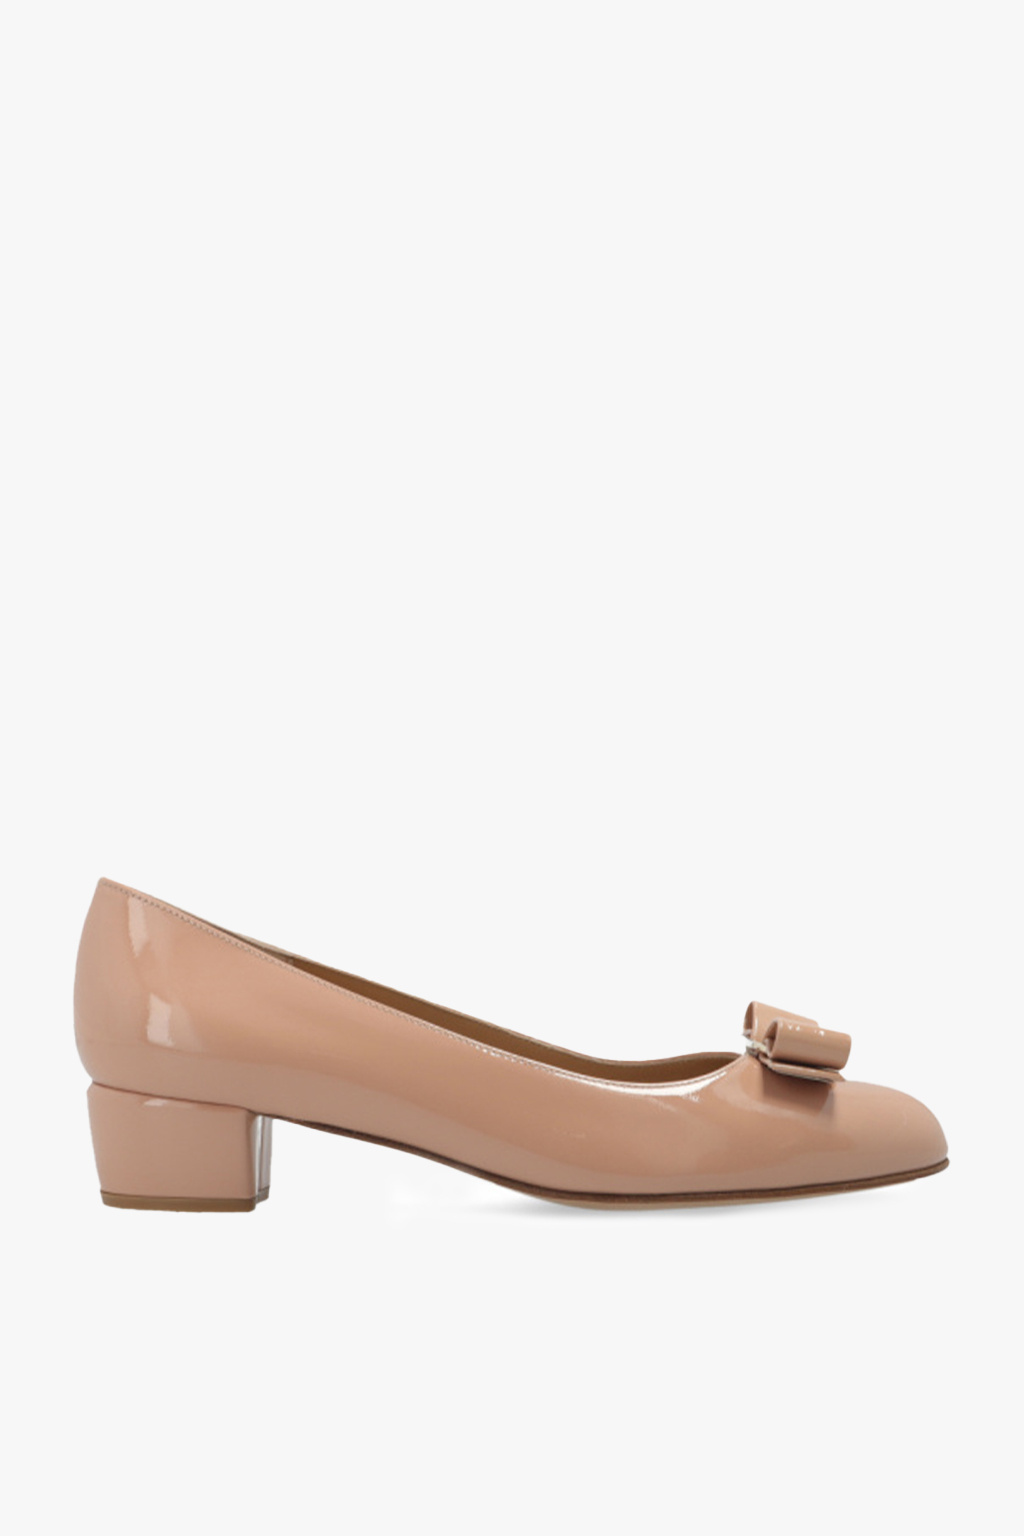 Salvatore Ferragamo Flats Women Shoe Size: 5 - Gem